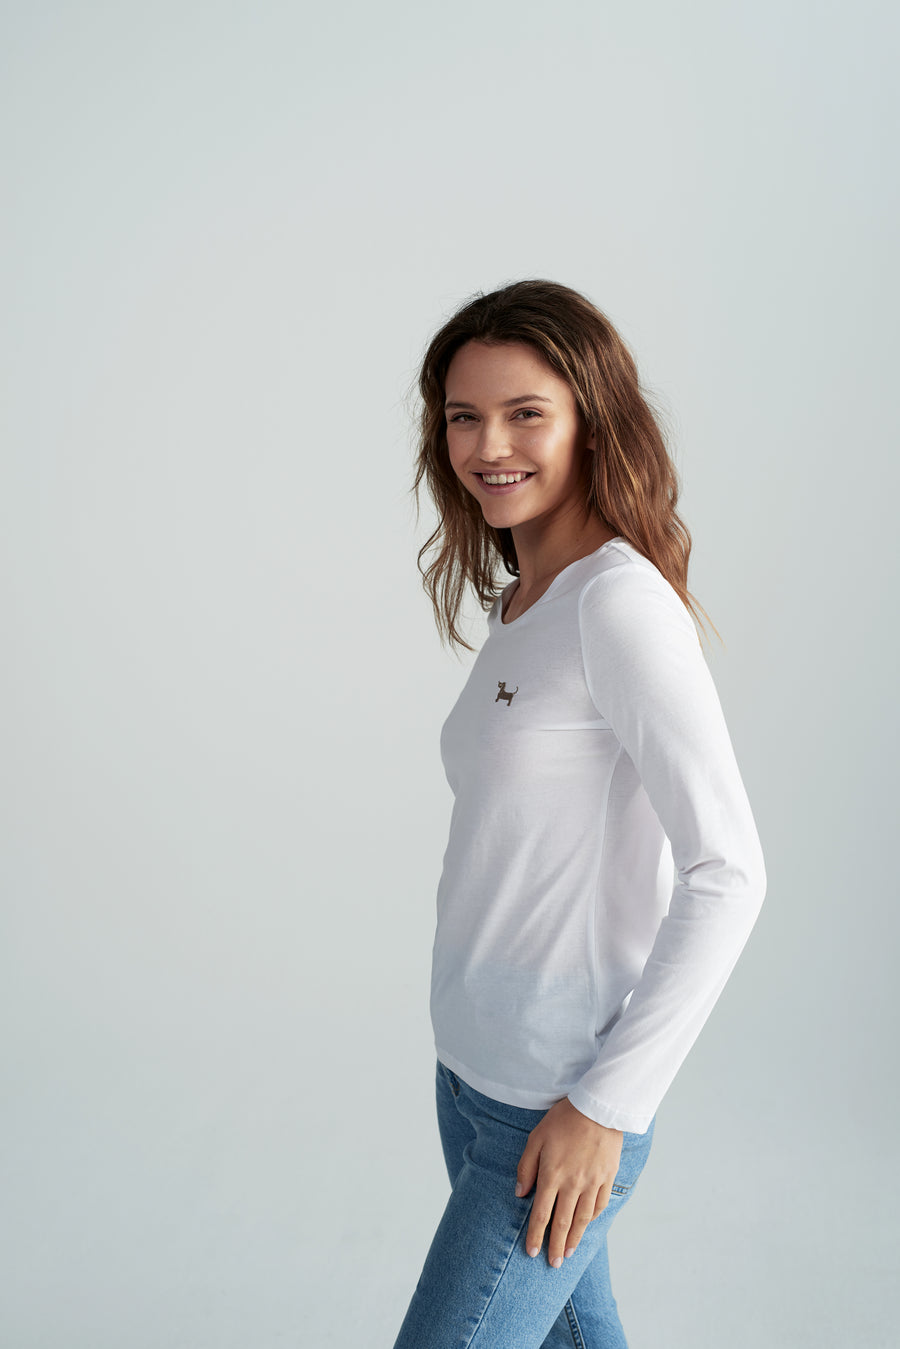 Nachhaltiges Damen-Shirt "Susi" in Weiß